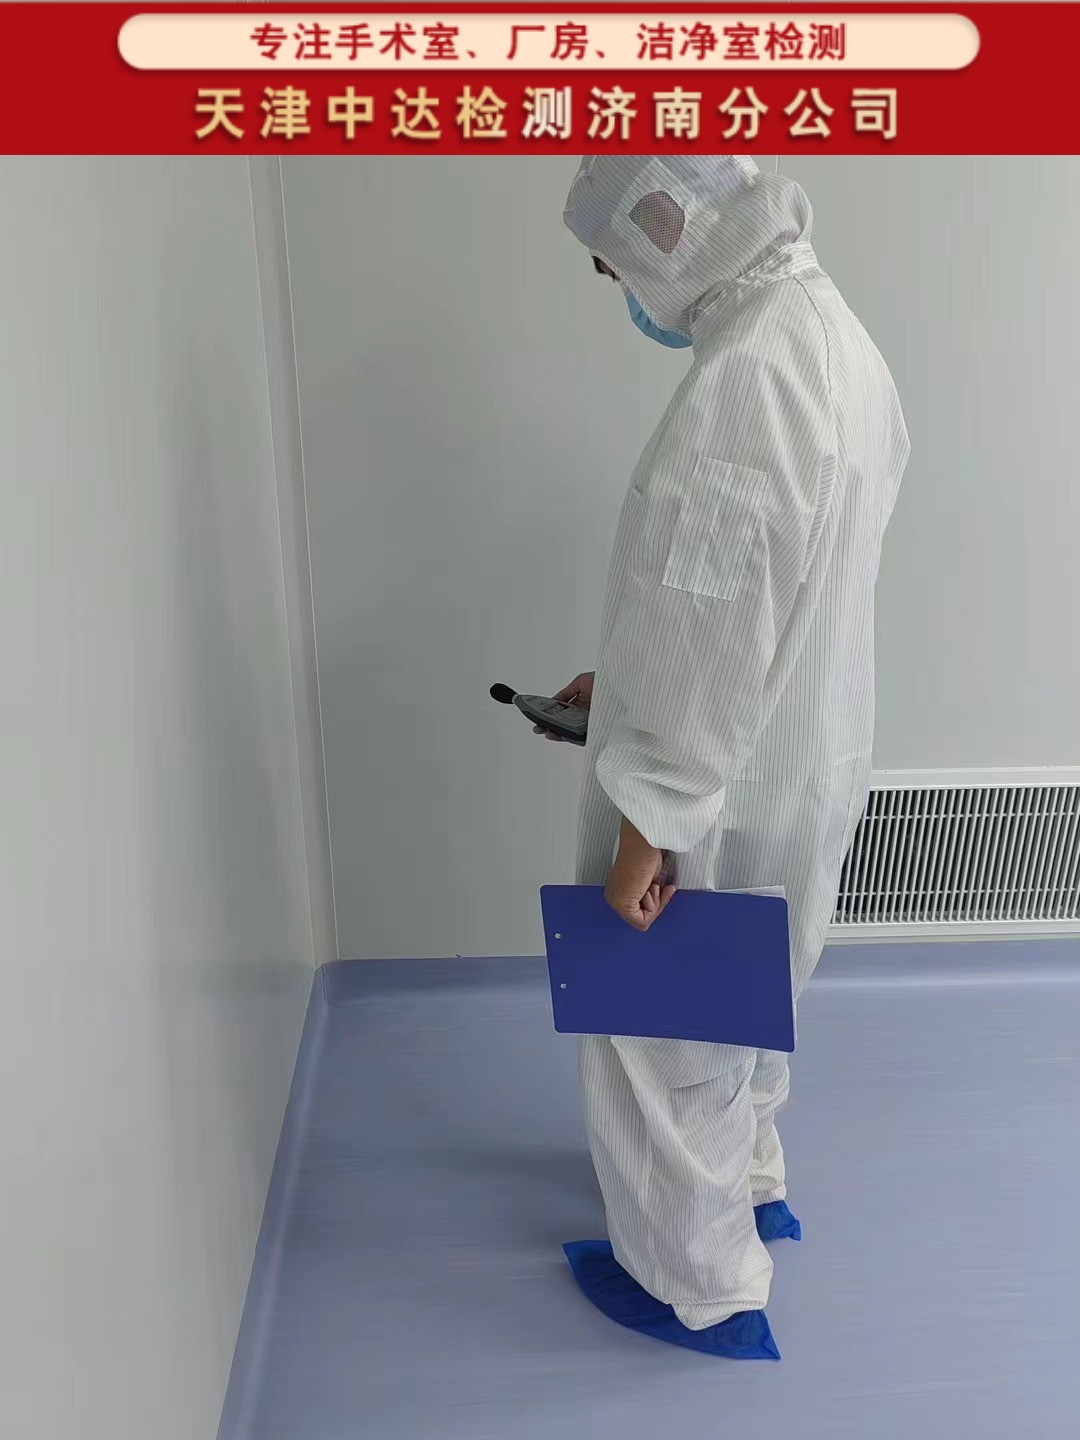 日照岚山区净化手术室洁净度检测部门-天津中达检测济南分公司